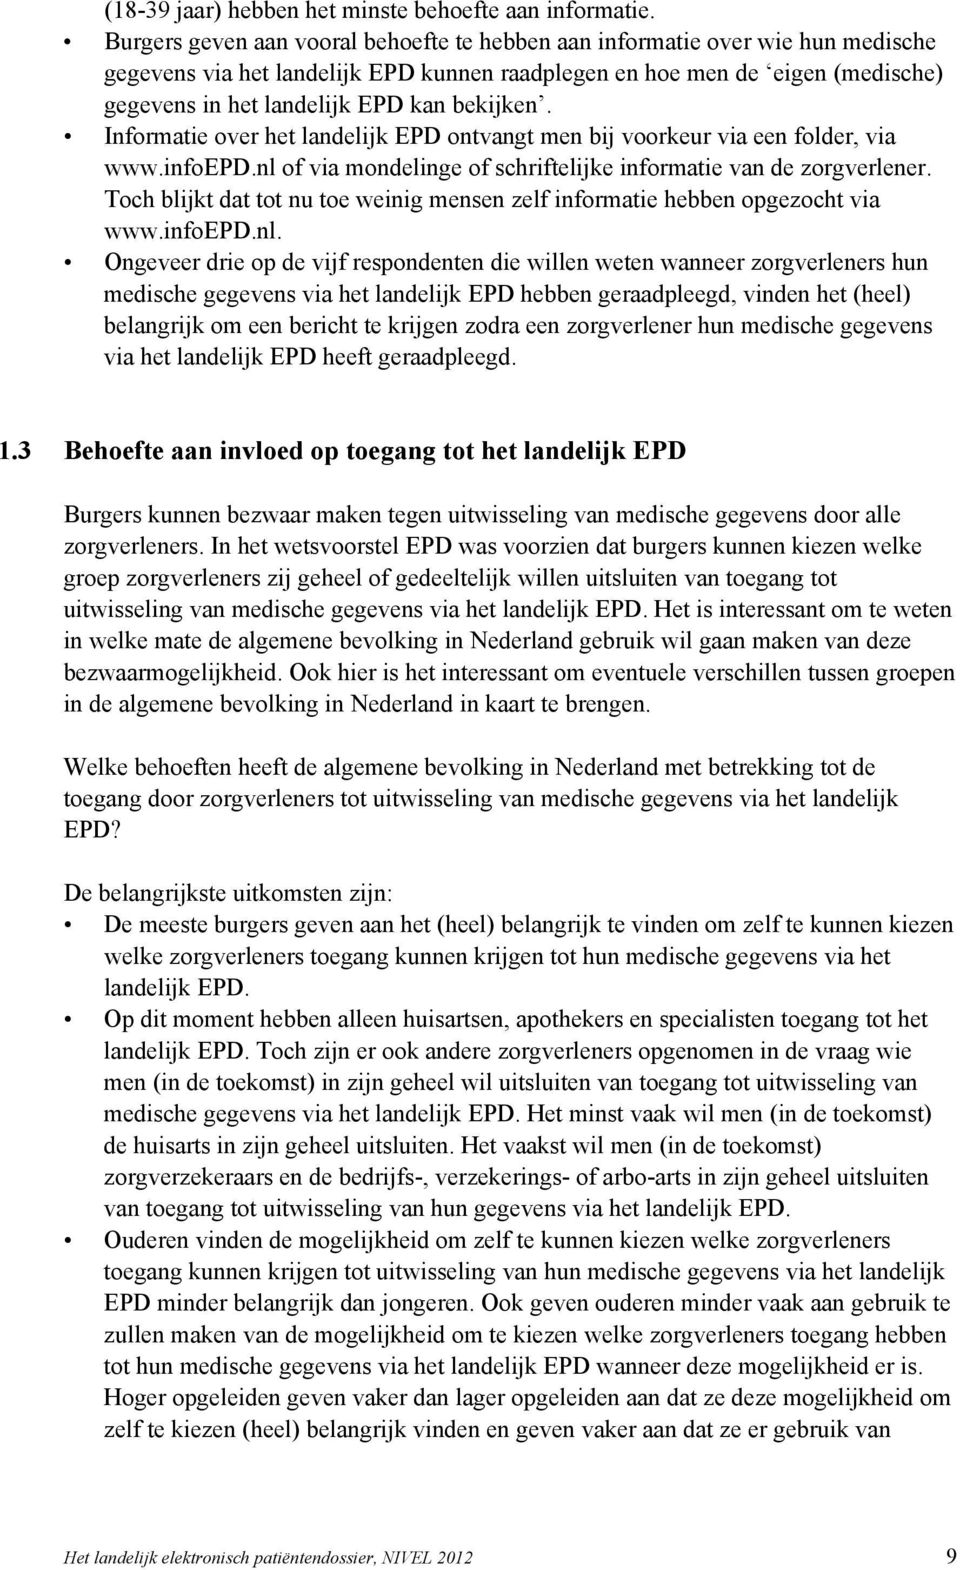 bekijken. Informatie over het landelijk EPD ontvangt men bij voorkeur via een folder, via www.infoepd.nl of via mondelinge of schriftelijke informatie van de zorgverlener.